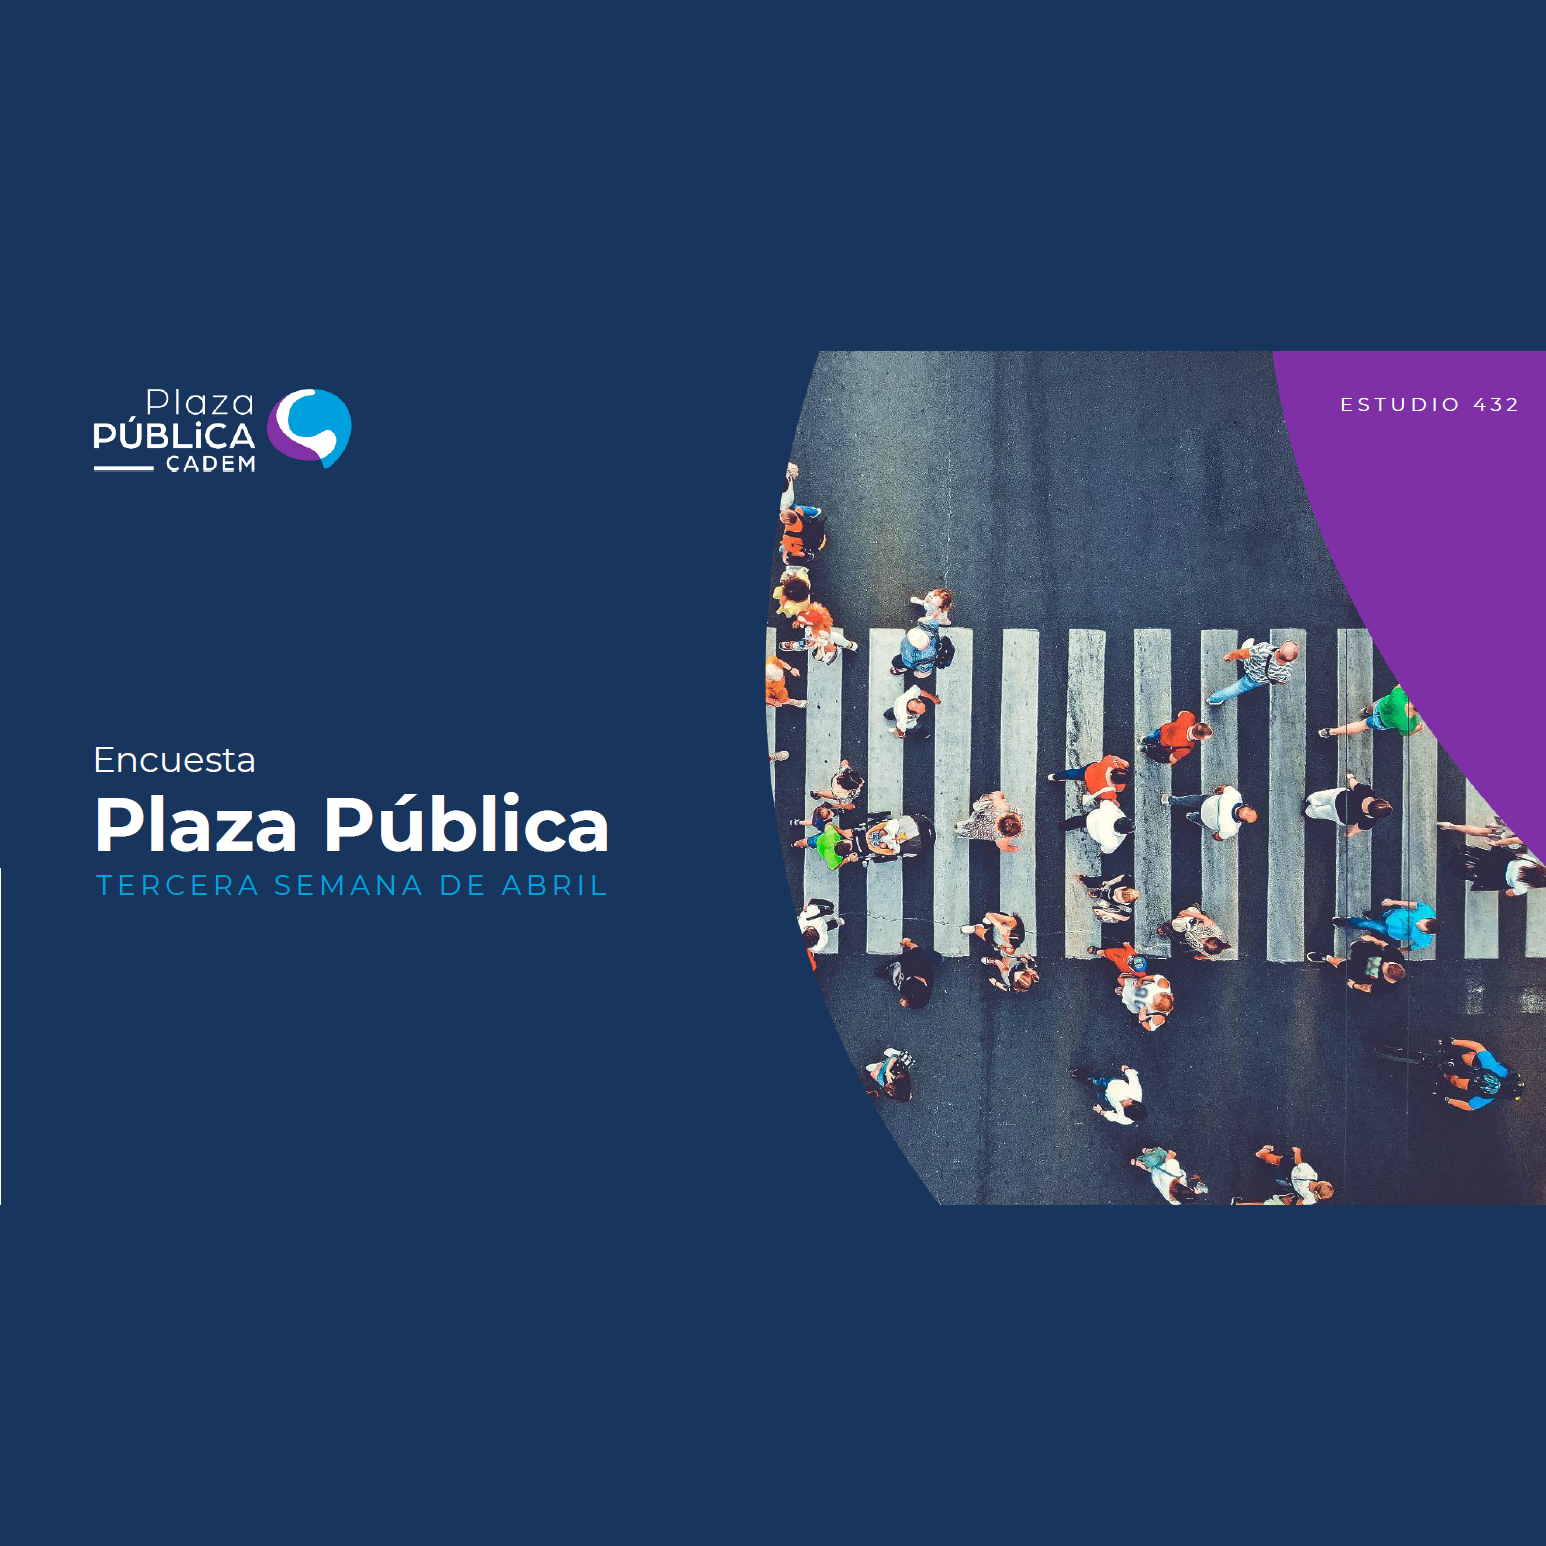 Estudio: Plaza pública Cadem – tercera semana de abril